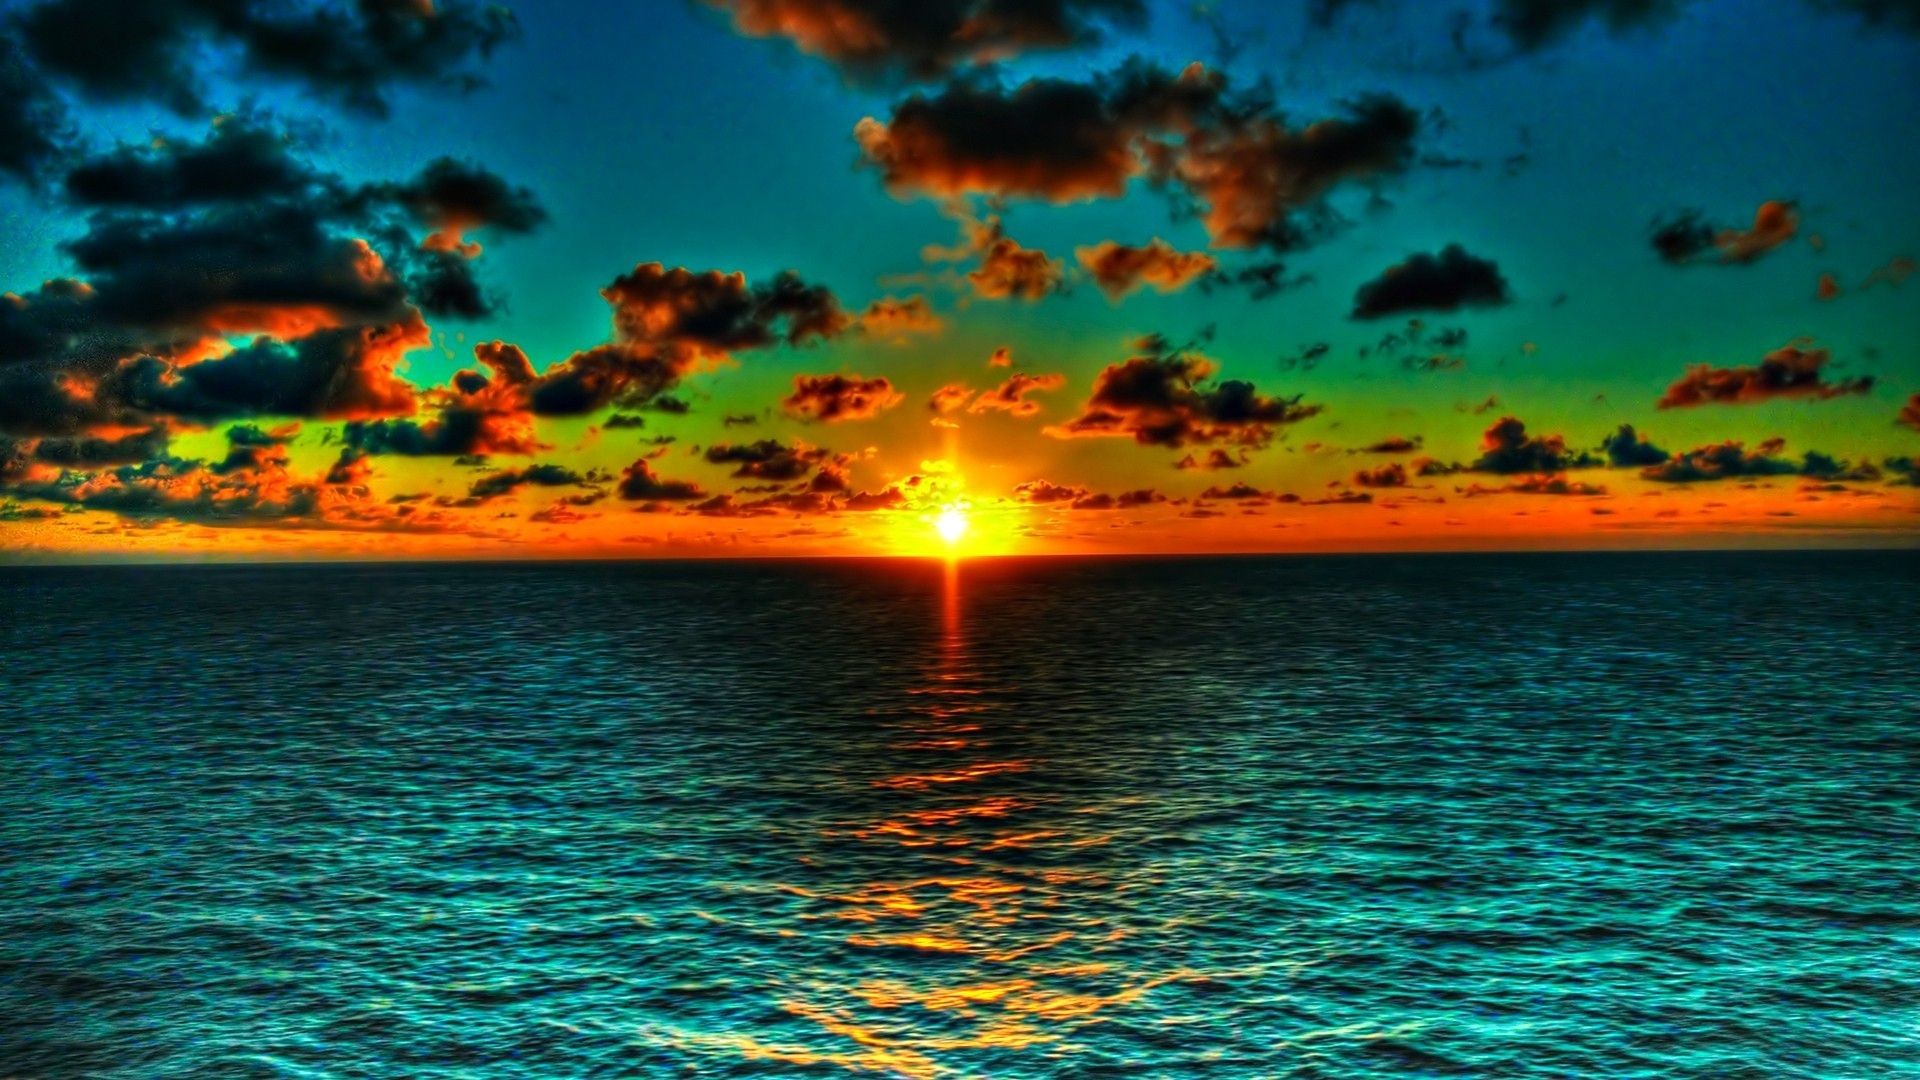 A stunning sunset HD wallpaper 4k background